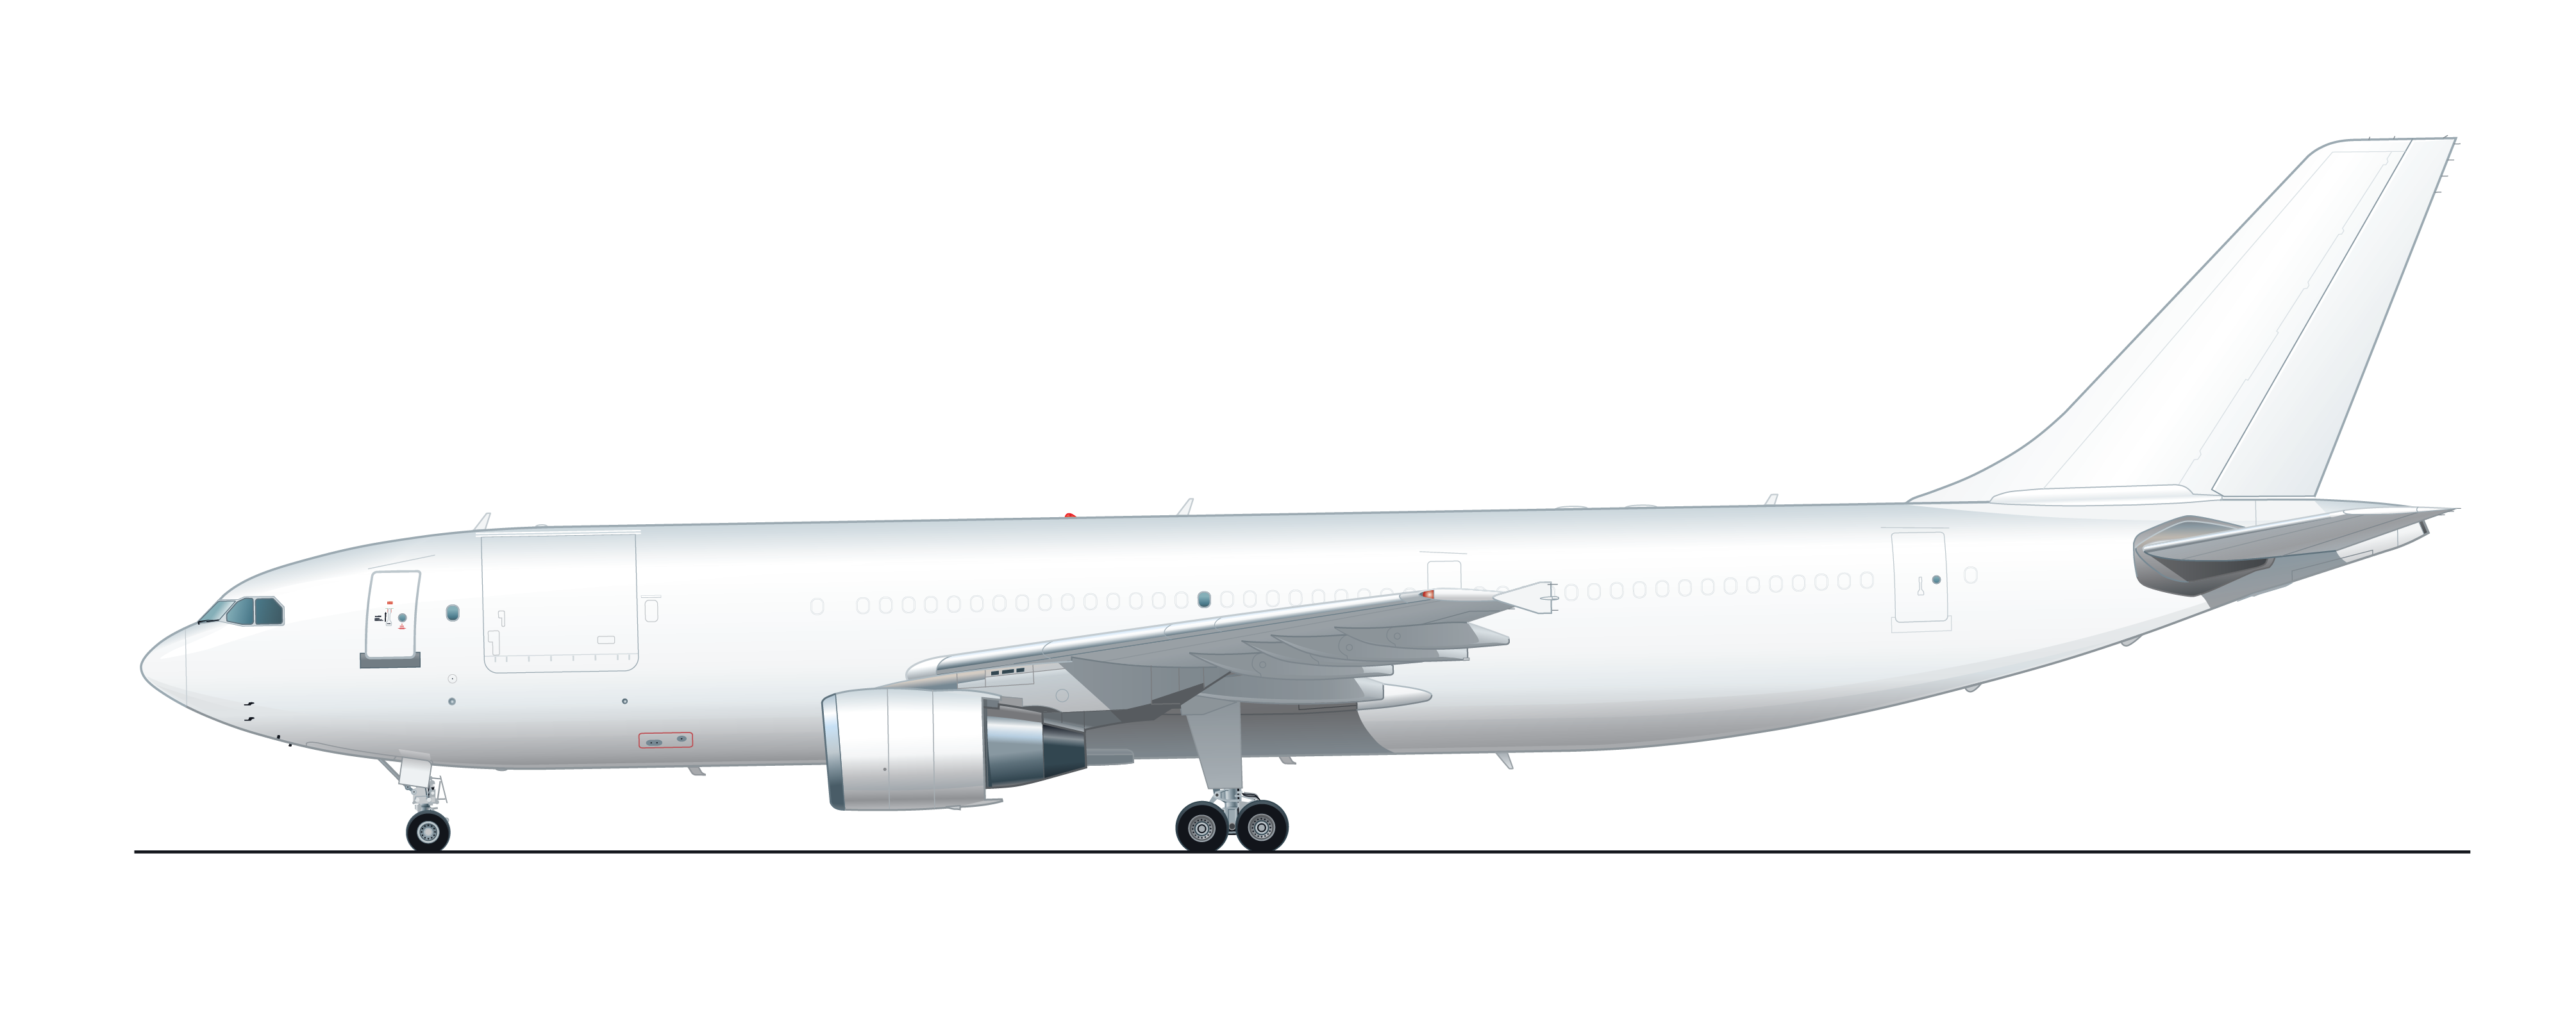 AAR A300-600F